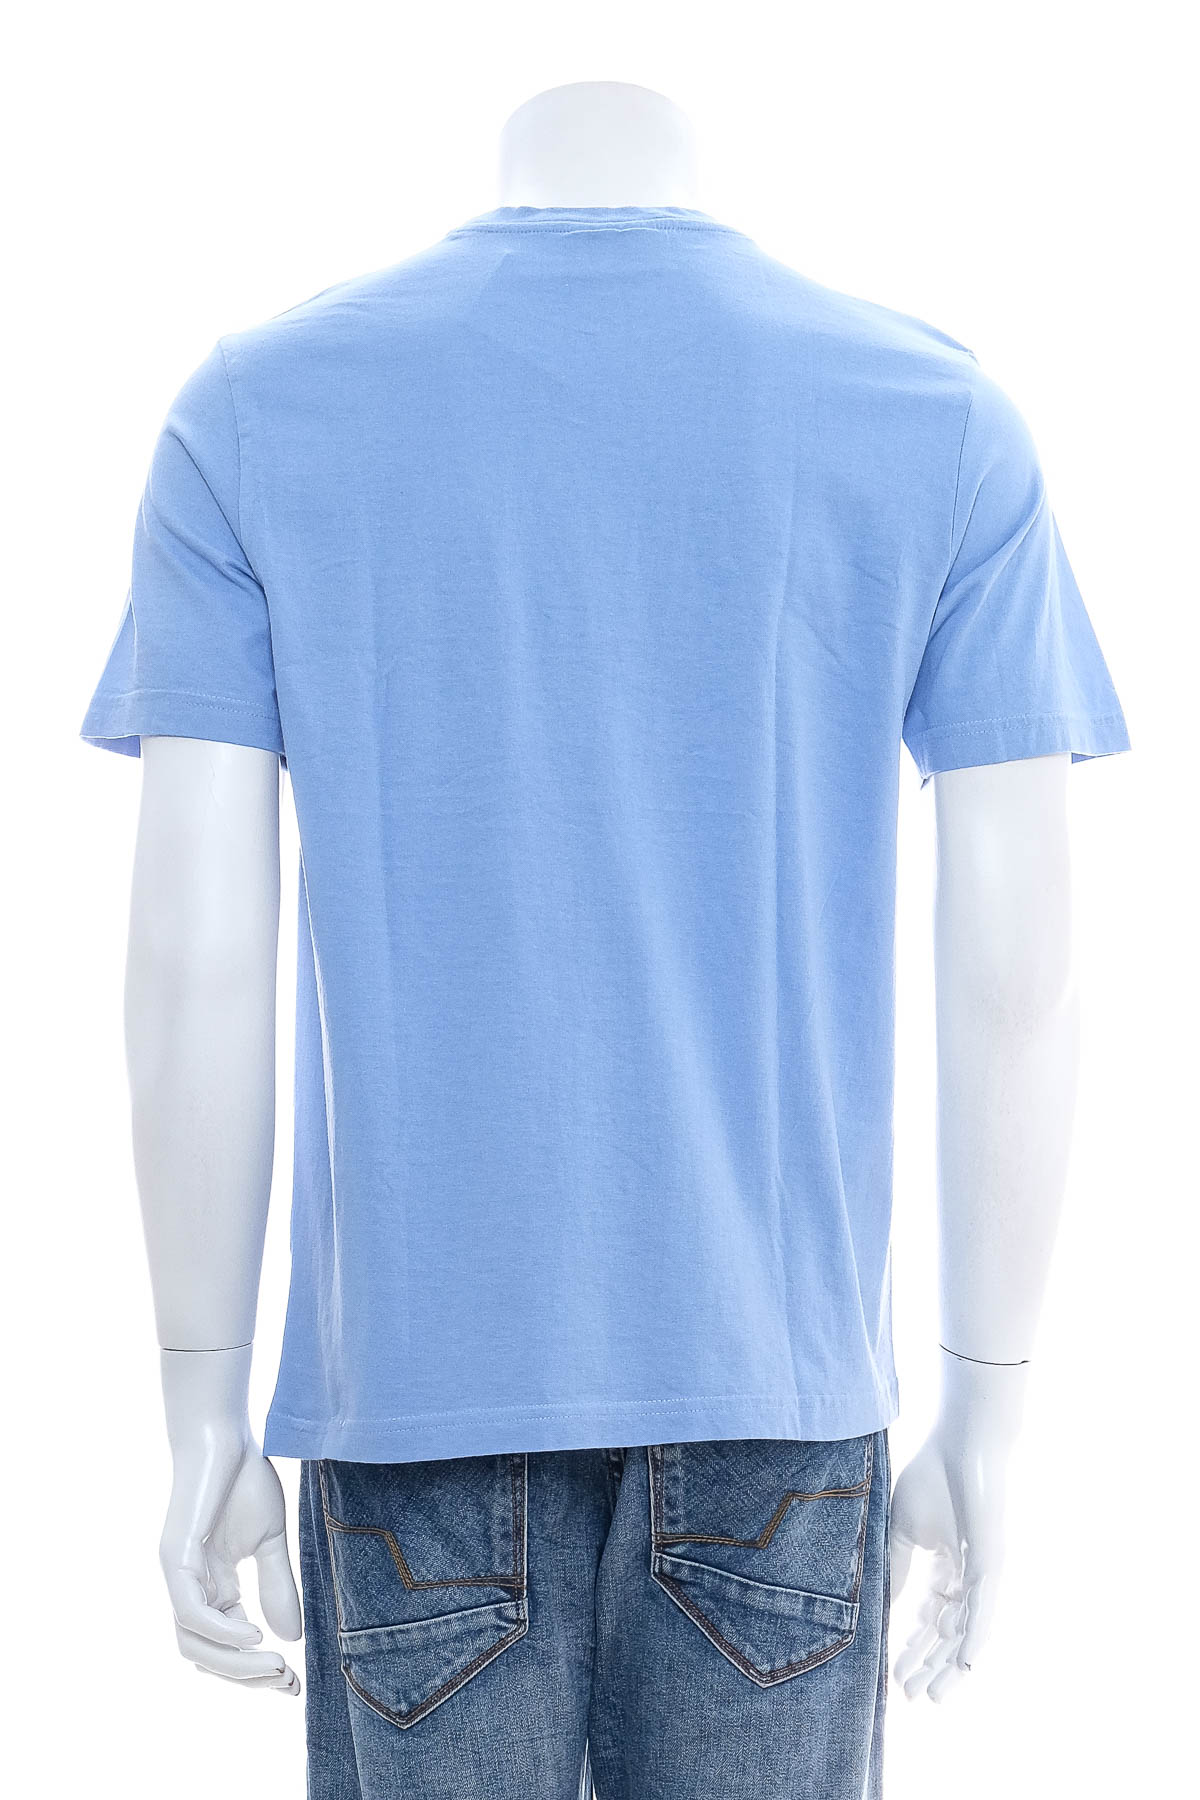 Men's T-shirt - Enrico Mori - 1